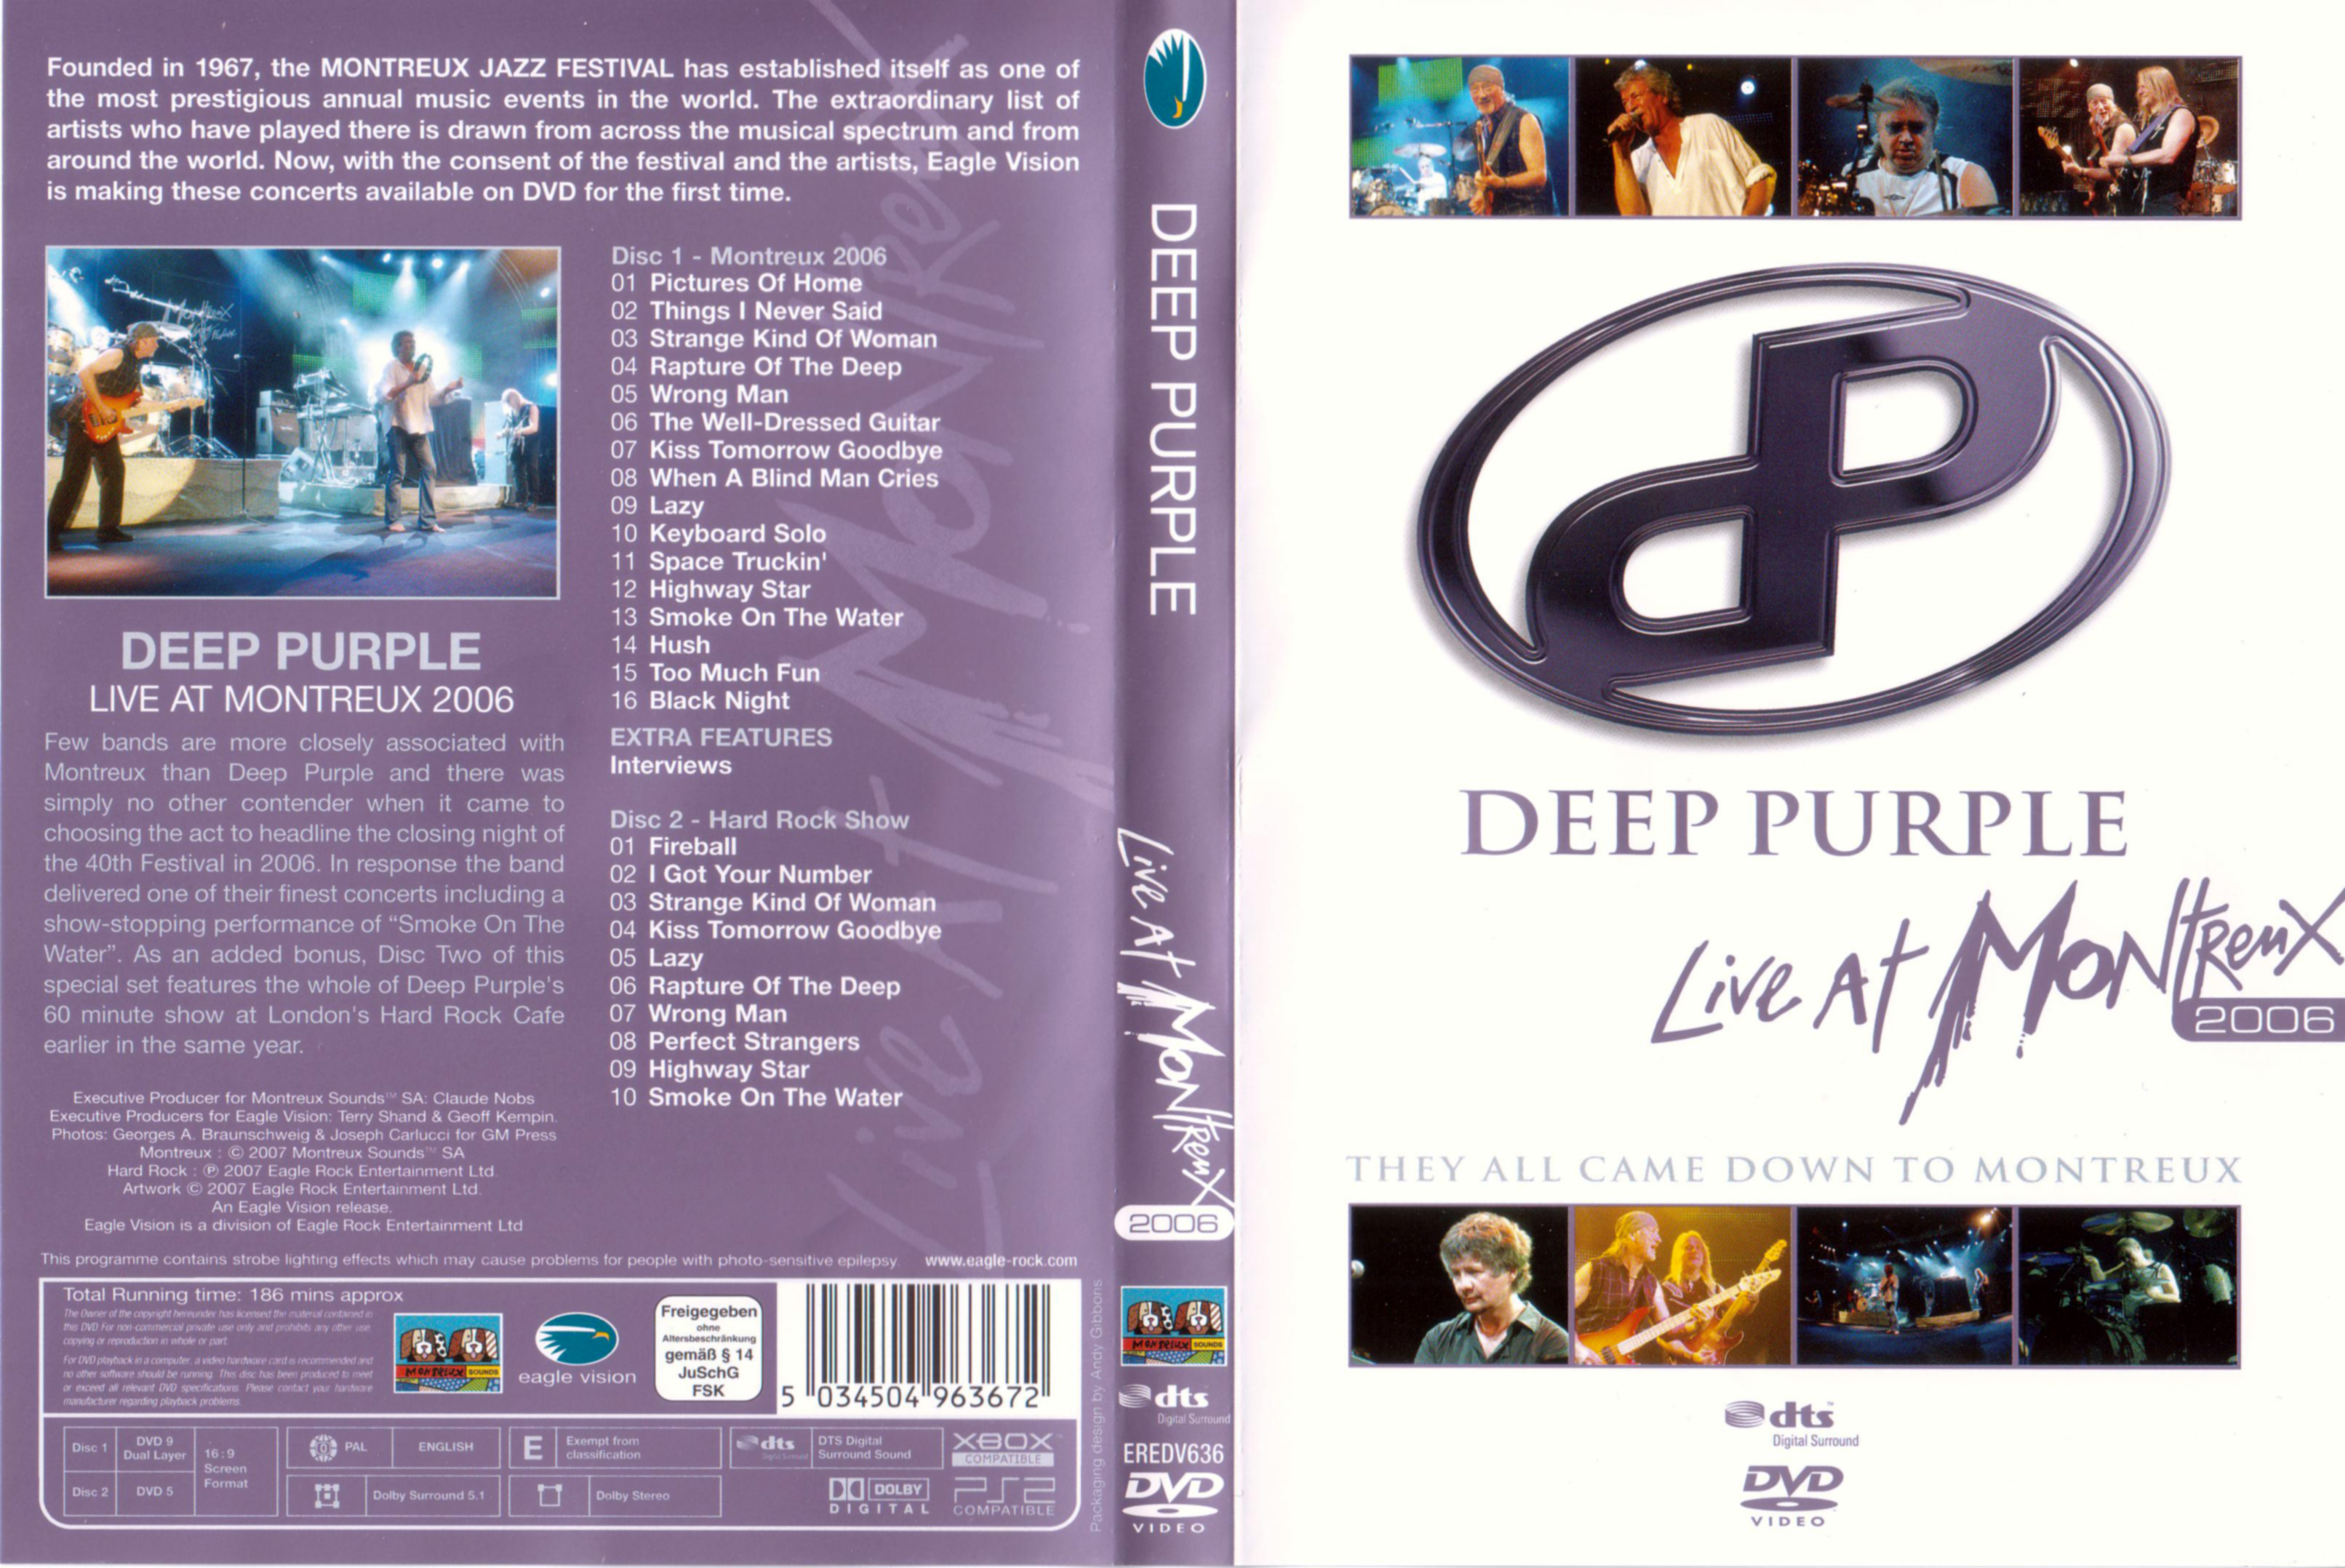 Jaquette DVD Deep Purple Live at Montreux 2006